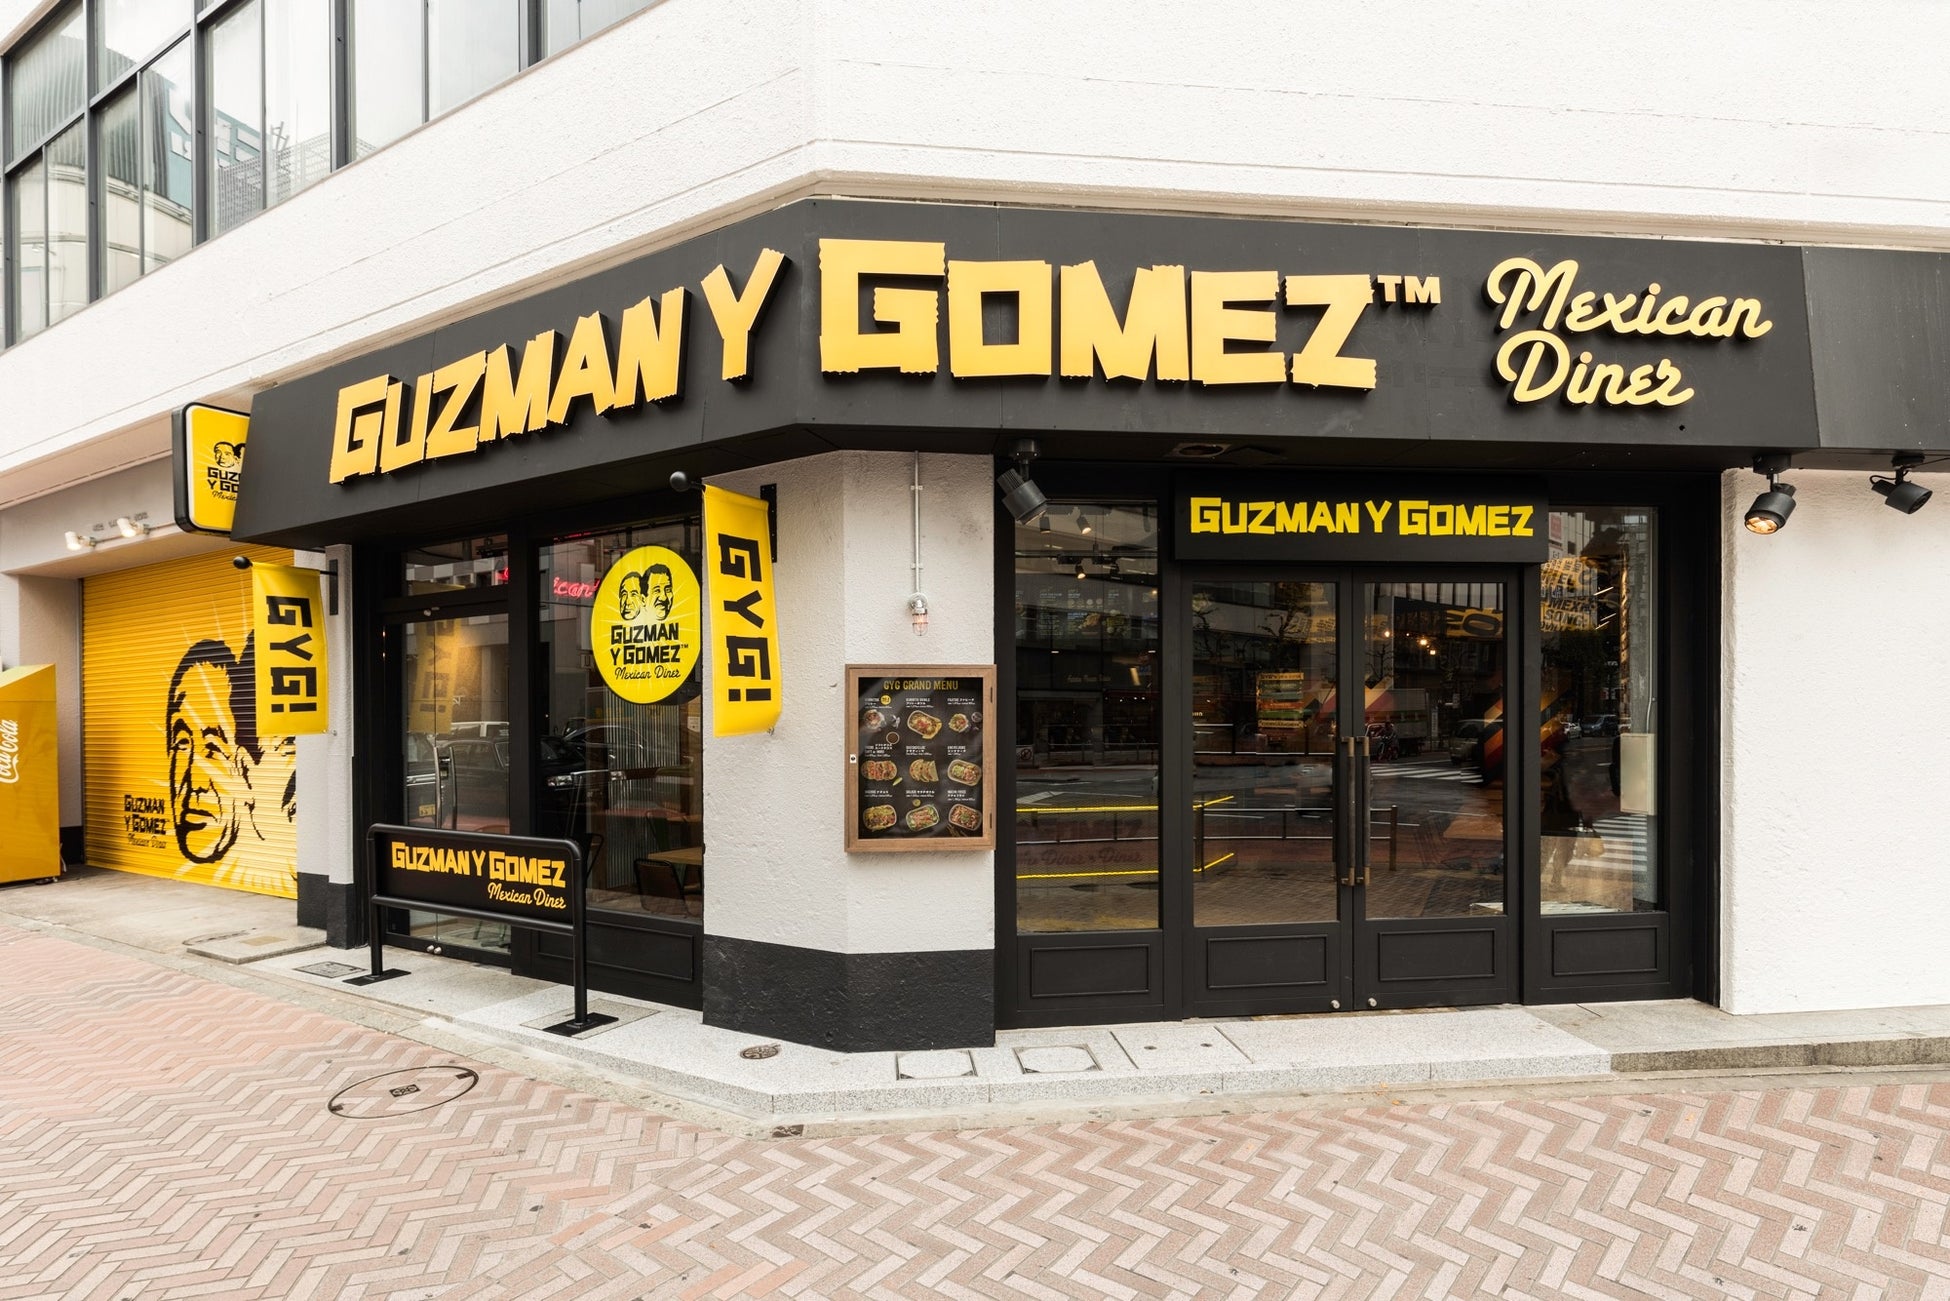 新たな食の選択肢、プラントベースで作ったタコス「チミシュレッドマッシュルームタコス」を2022年12月1日からファストカジュアルスタイルのメキシカンダイナー「Guzman y Gomez」で発売開始。のサブ画像3